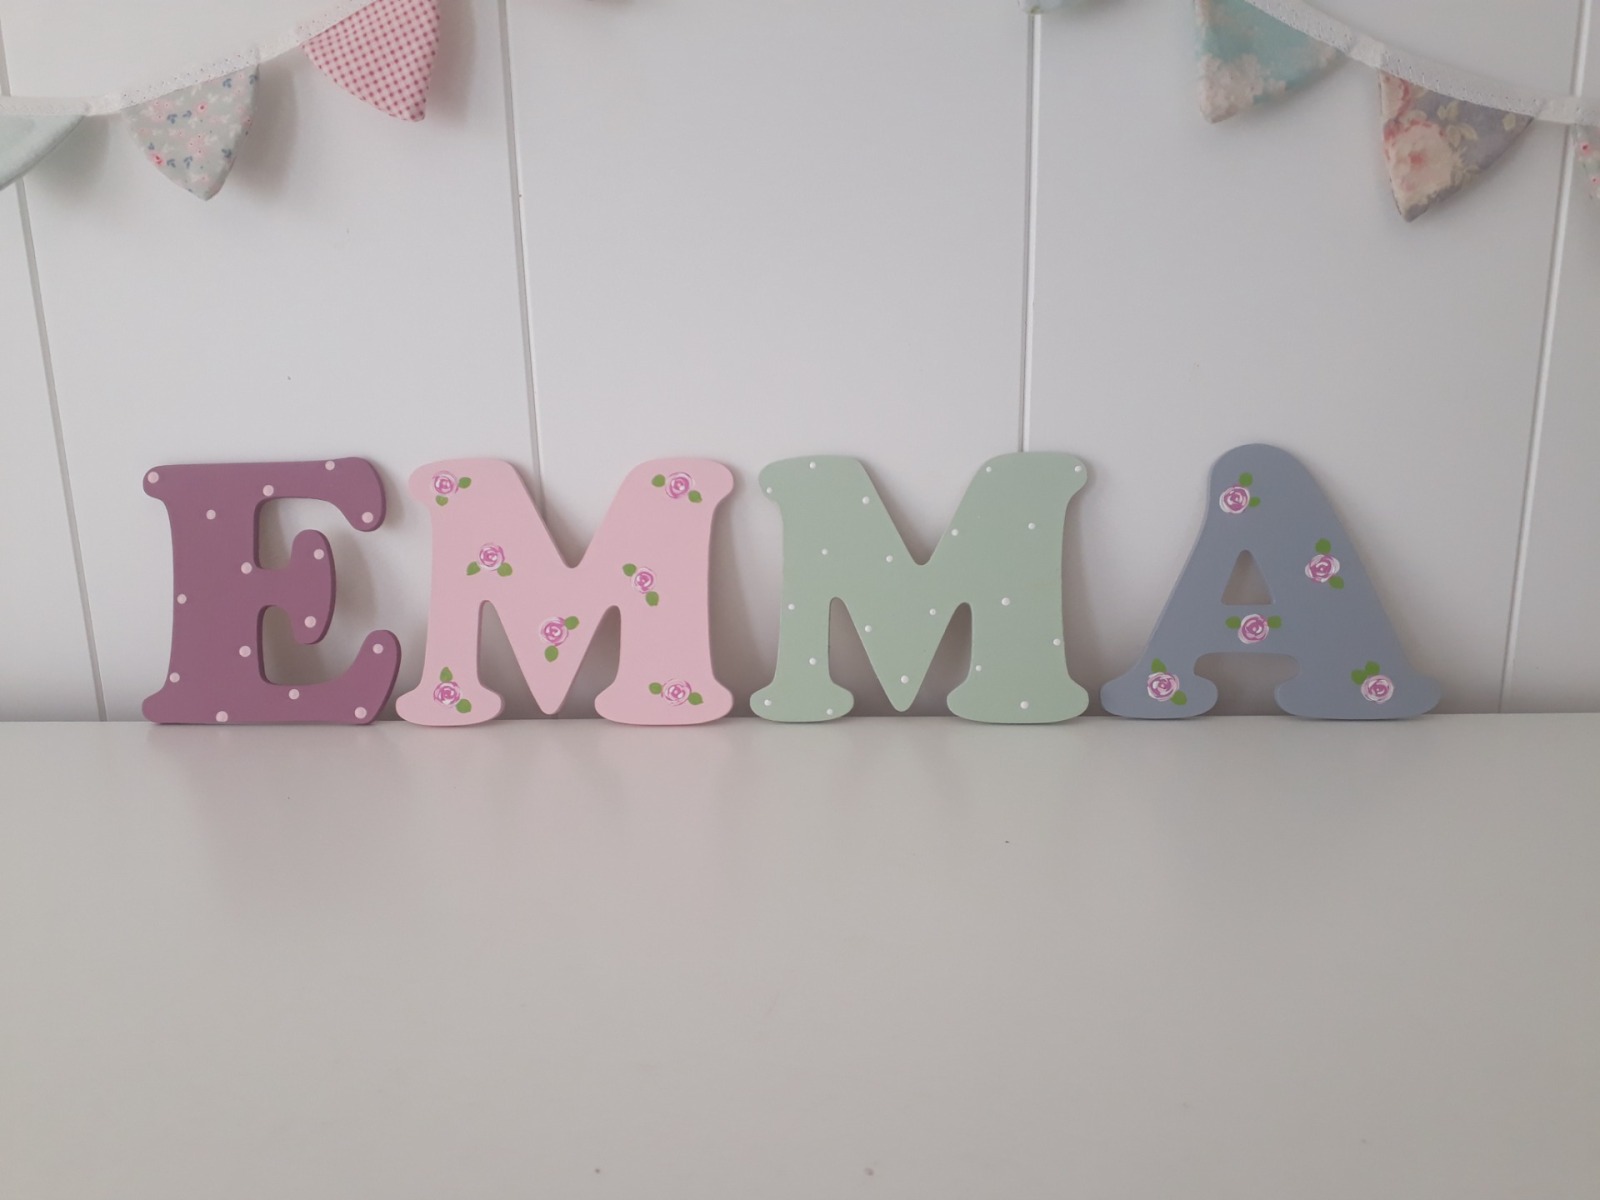 10 cm Holzbuchstaben Kinderzimmer personalisiert in malve, rose, grau und mint